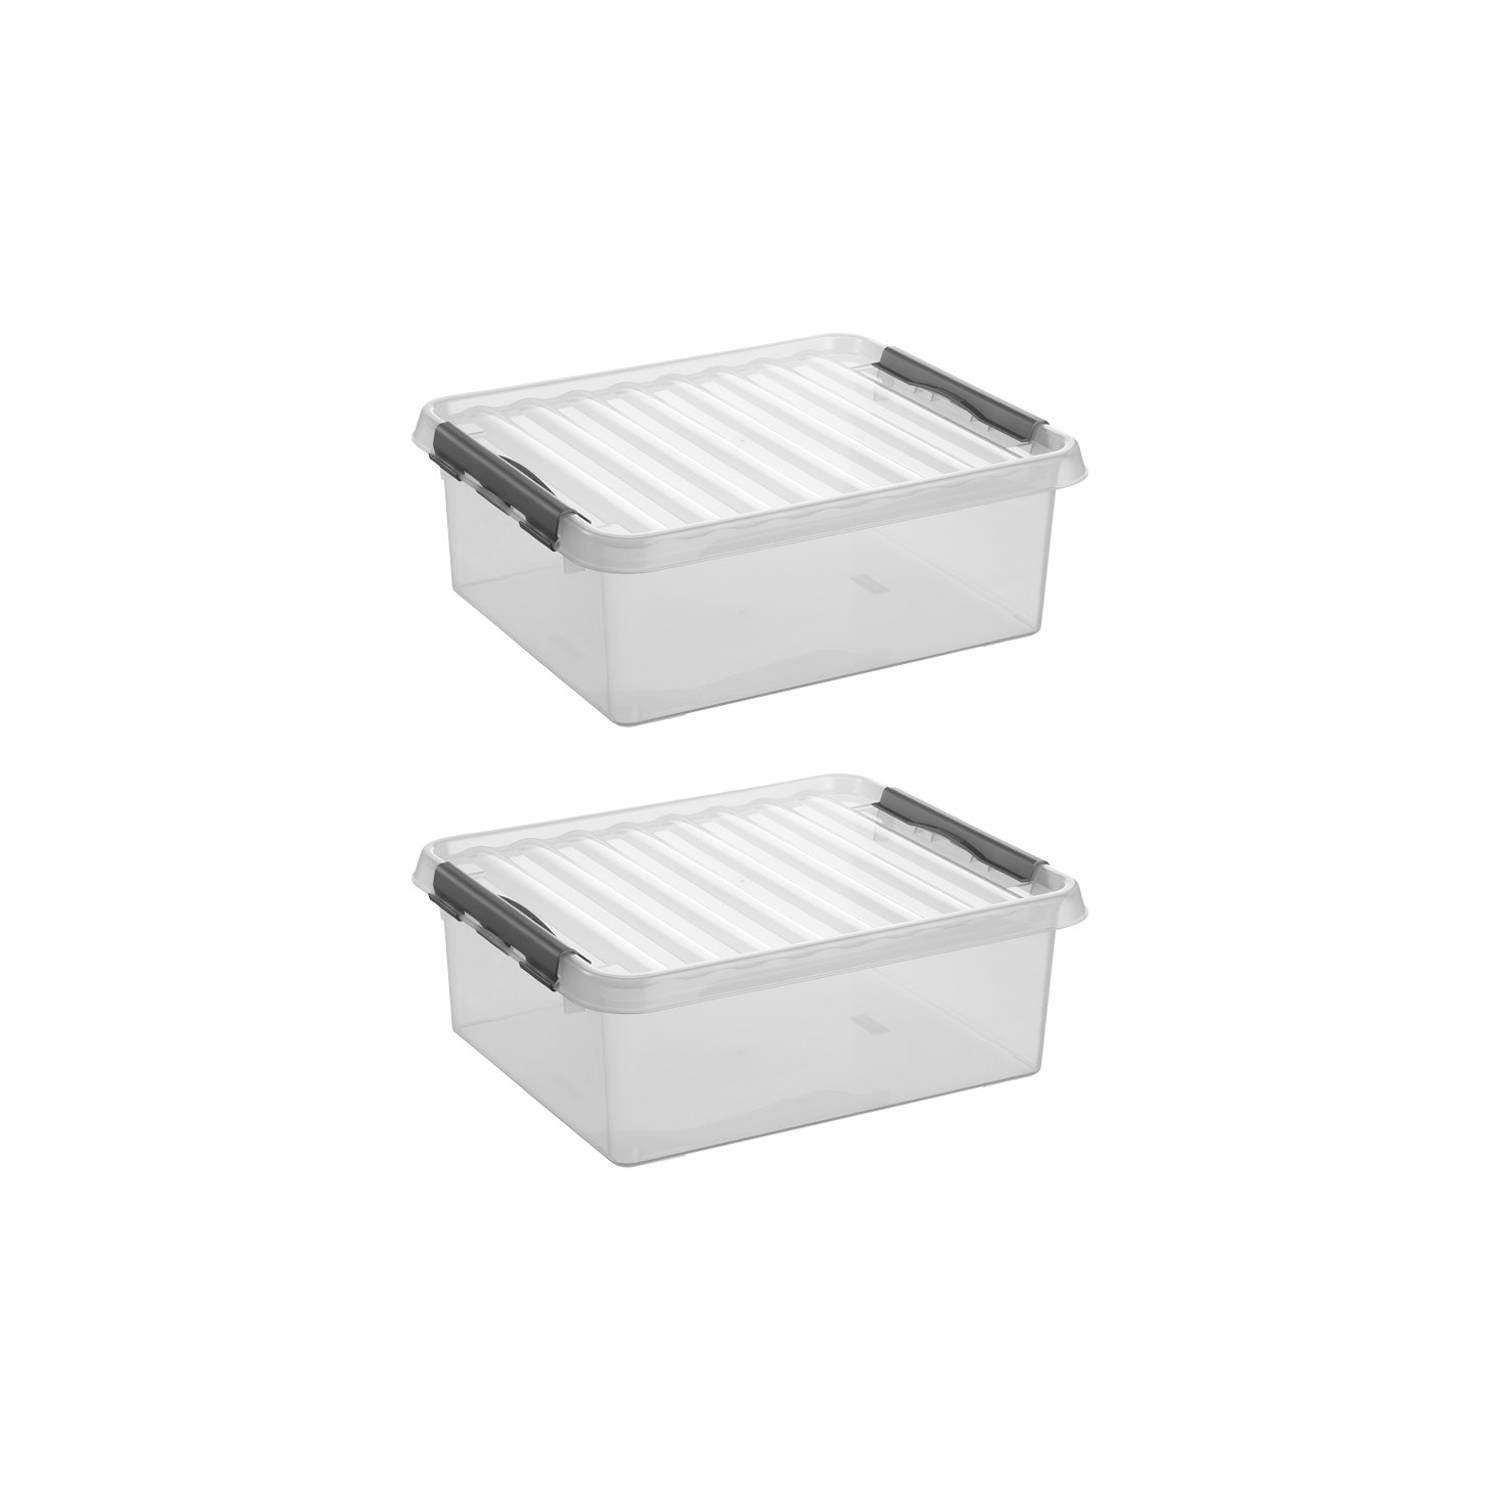 Sunware - Q-line opbergbox 25L - Set van 2 - Transparant/grijs